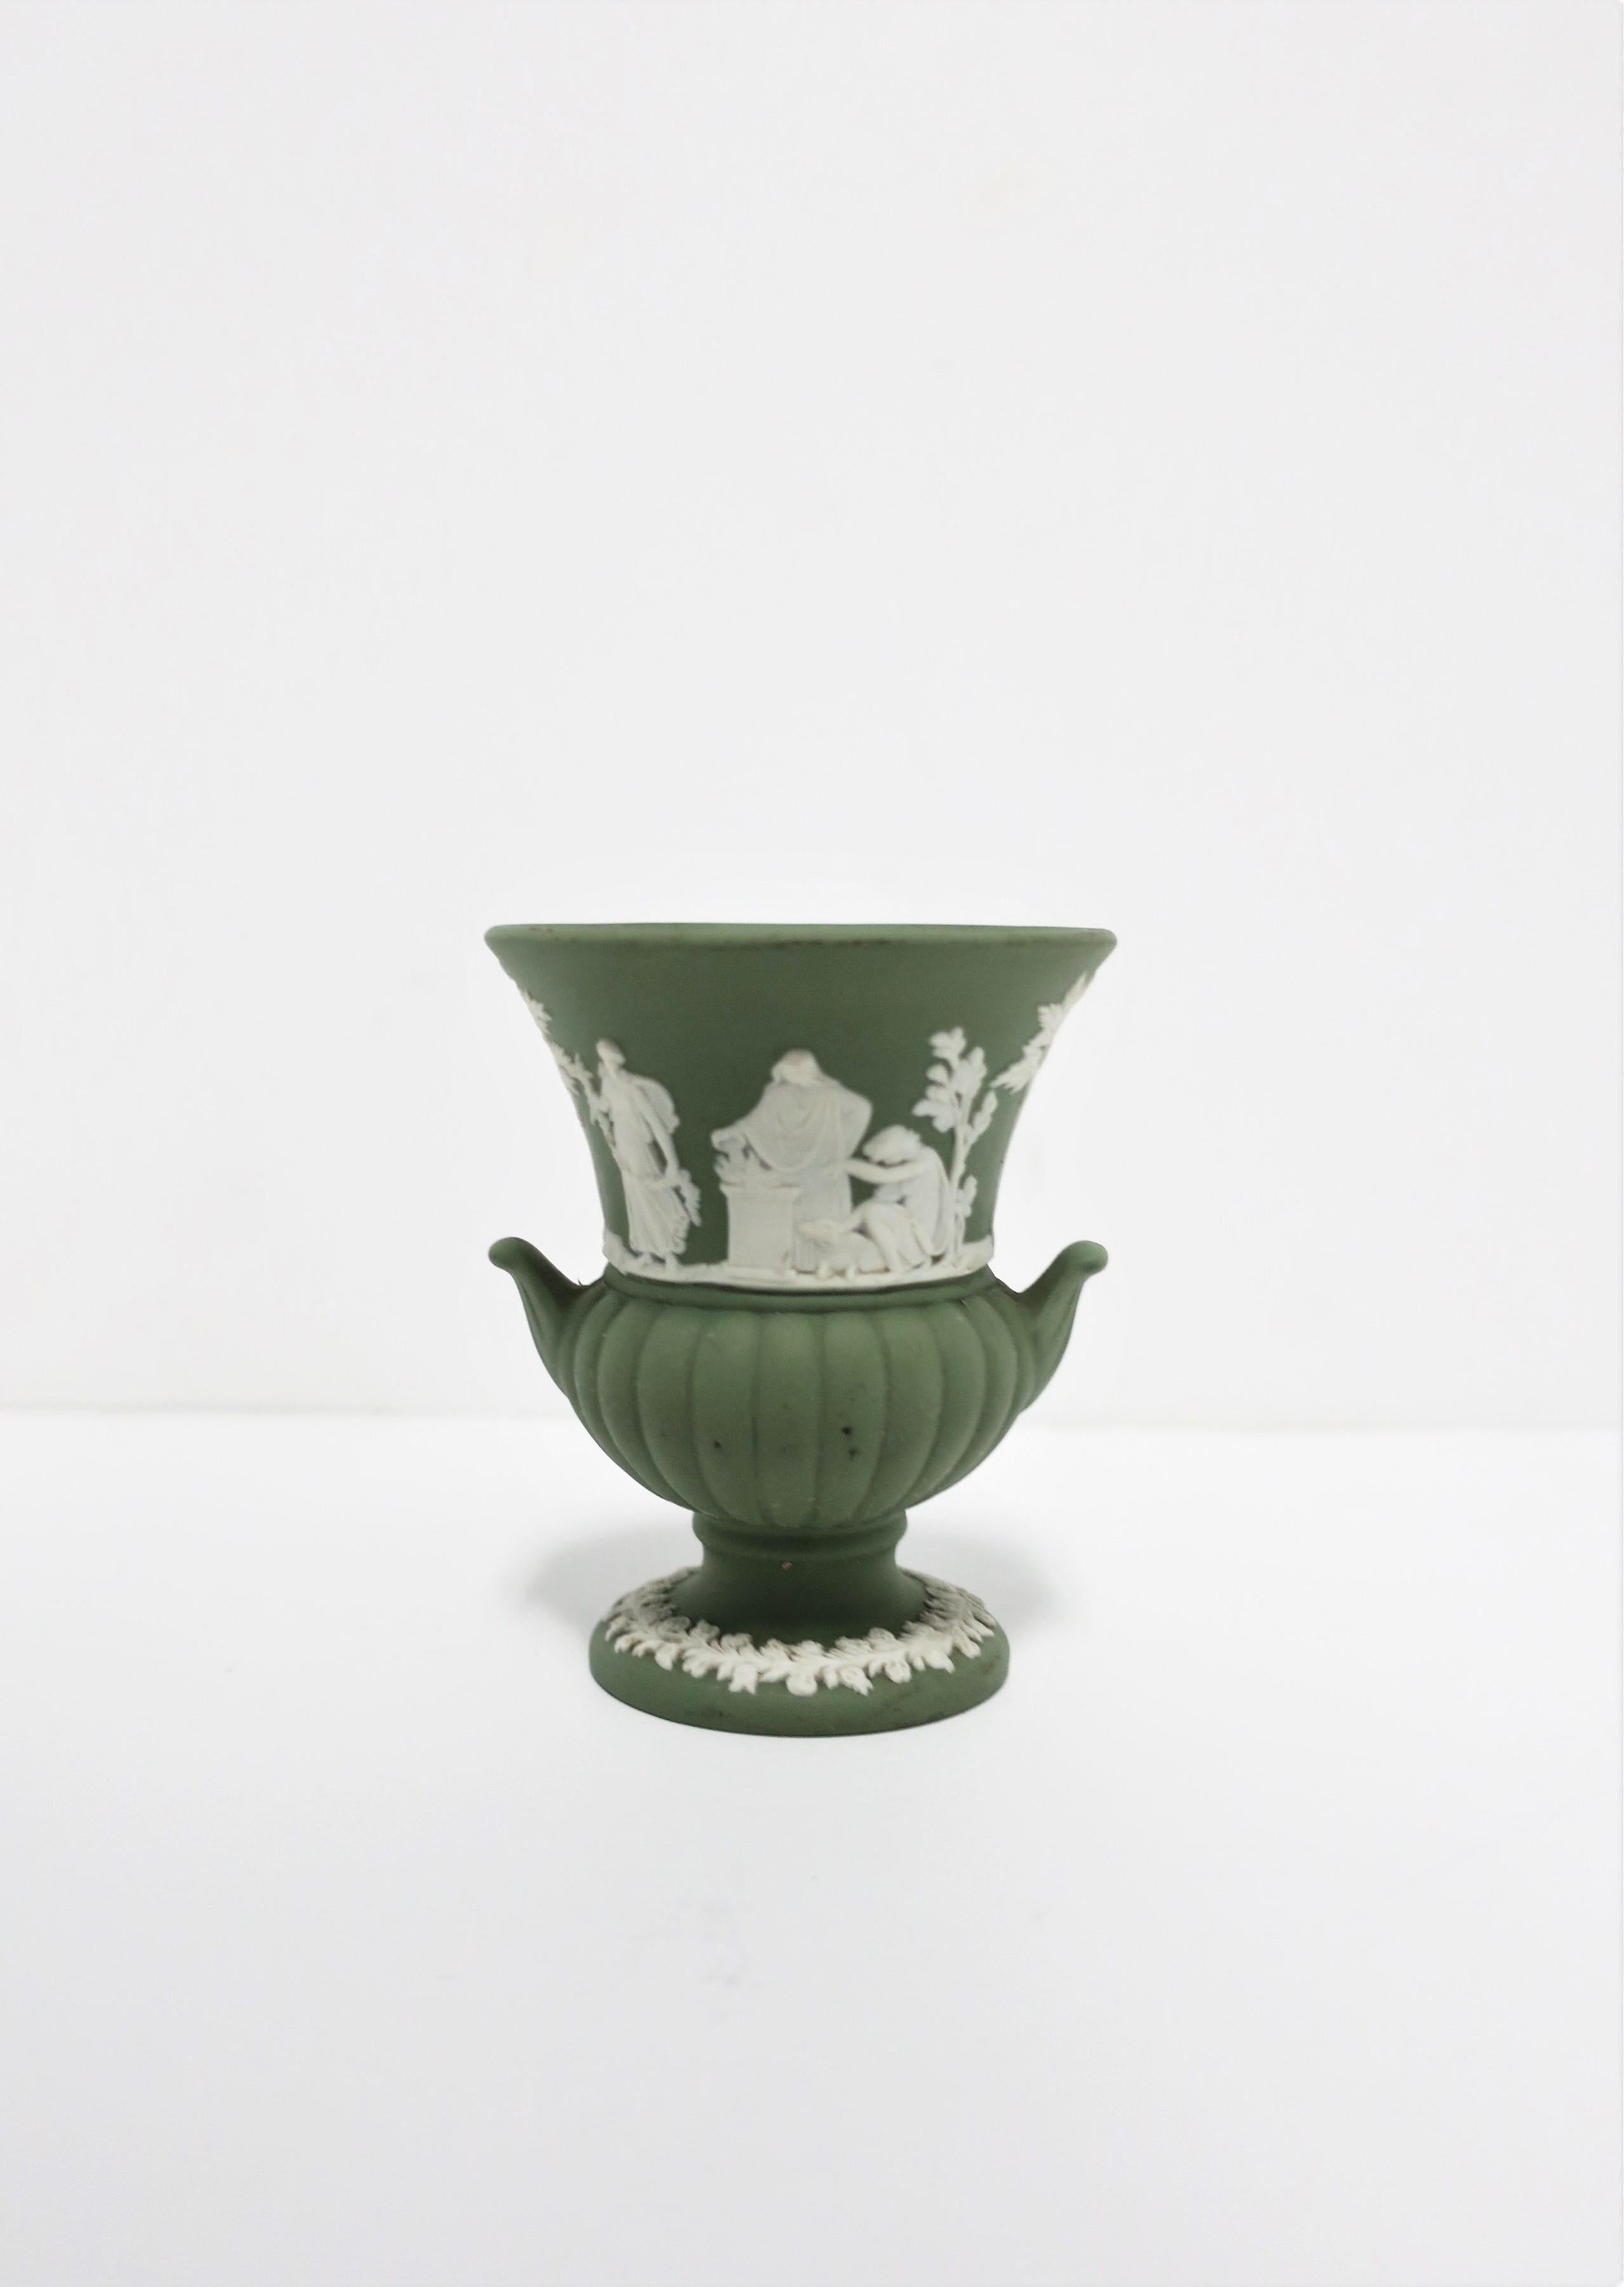 Stoneware English Wedgwood Jasperware Urn Vase Neoclassical Design